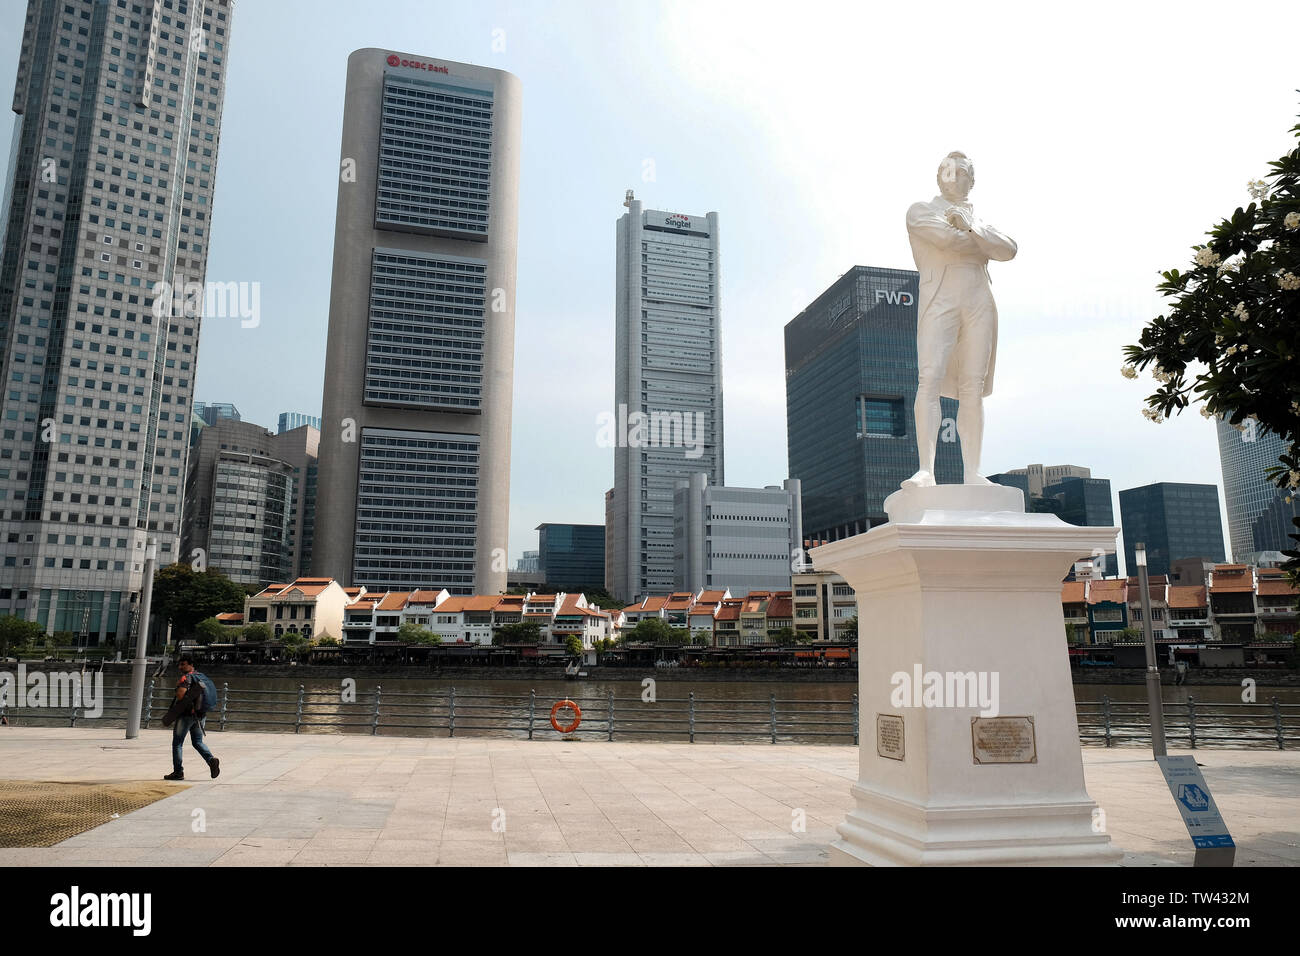 Boat Quay Landepunkt Singapur, die Lage, die Tradition, dass Sir Stamford Raffles am 28. Januar 1819 landete. Stockfoto